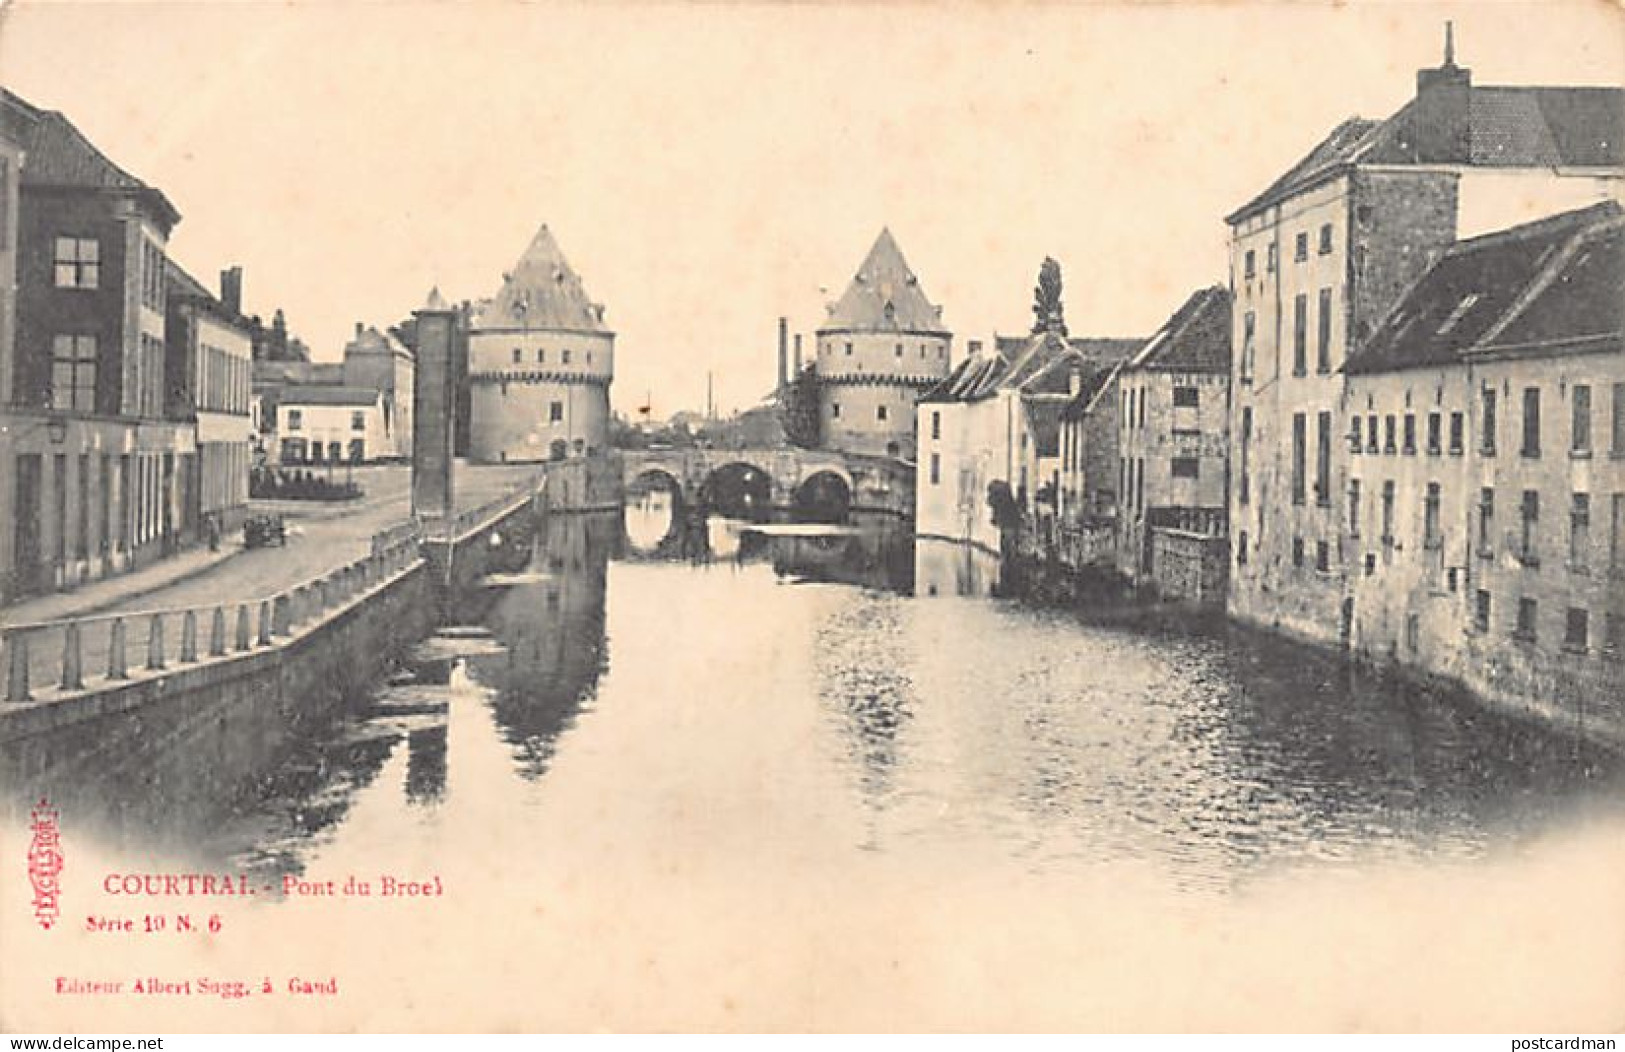 België - KORTRIJK (W. Vl.) Broekbrug - Pont Du Broek - Uitg. Albert Sugg Série 19 N. 6 - Kortrijk